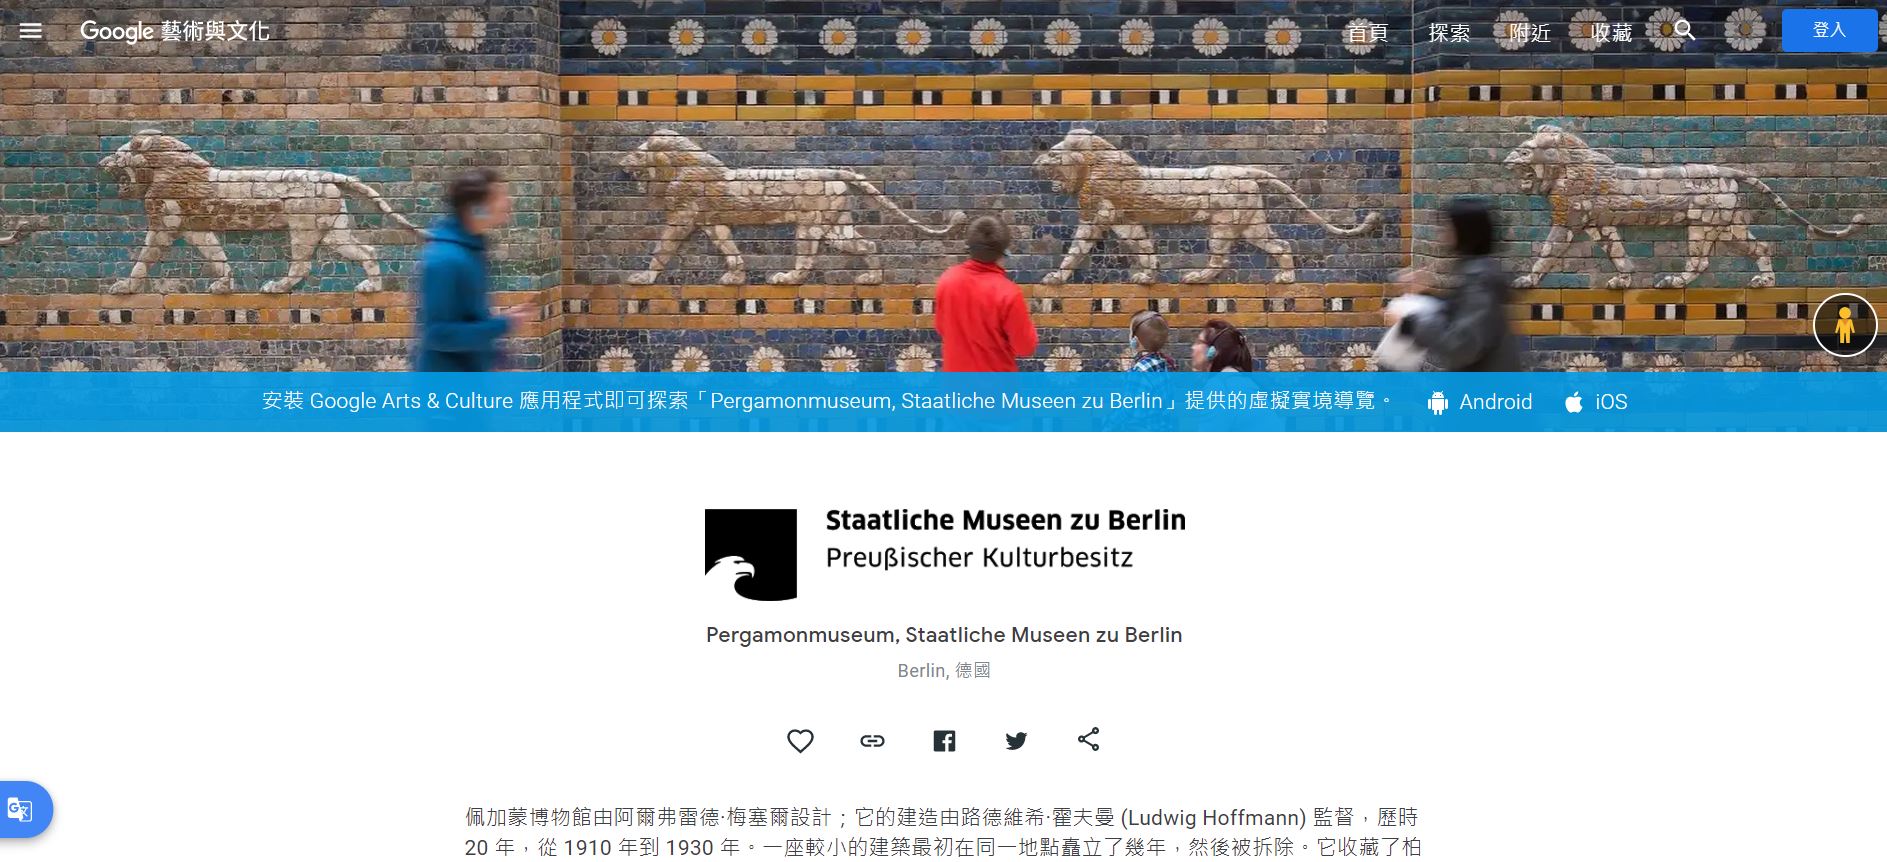 德國柏林博物館島佩加蒙博物館,佩加蒙博物館,Google Arts & Culture,Google 藝術與文化,虛擬實境美術館,線上博物館,線上展覽,線上美術館,柏林博物館